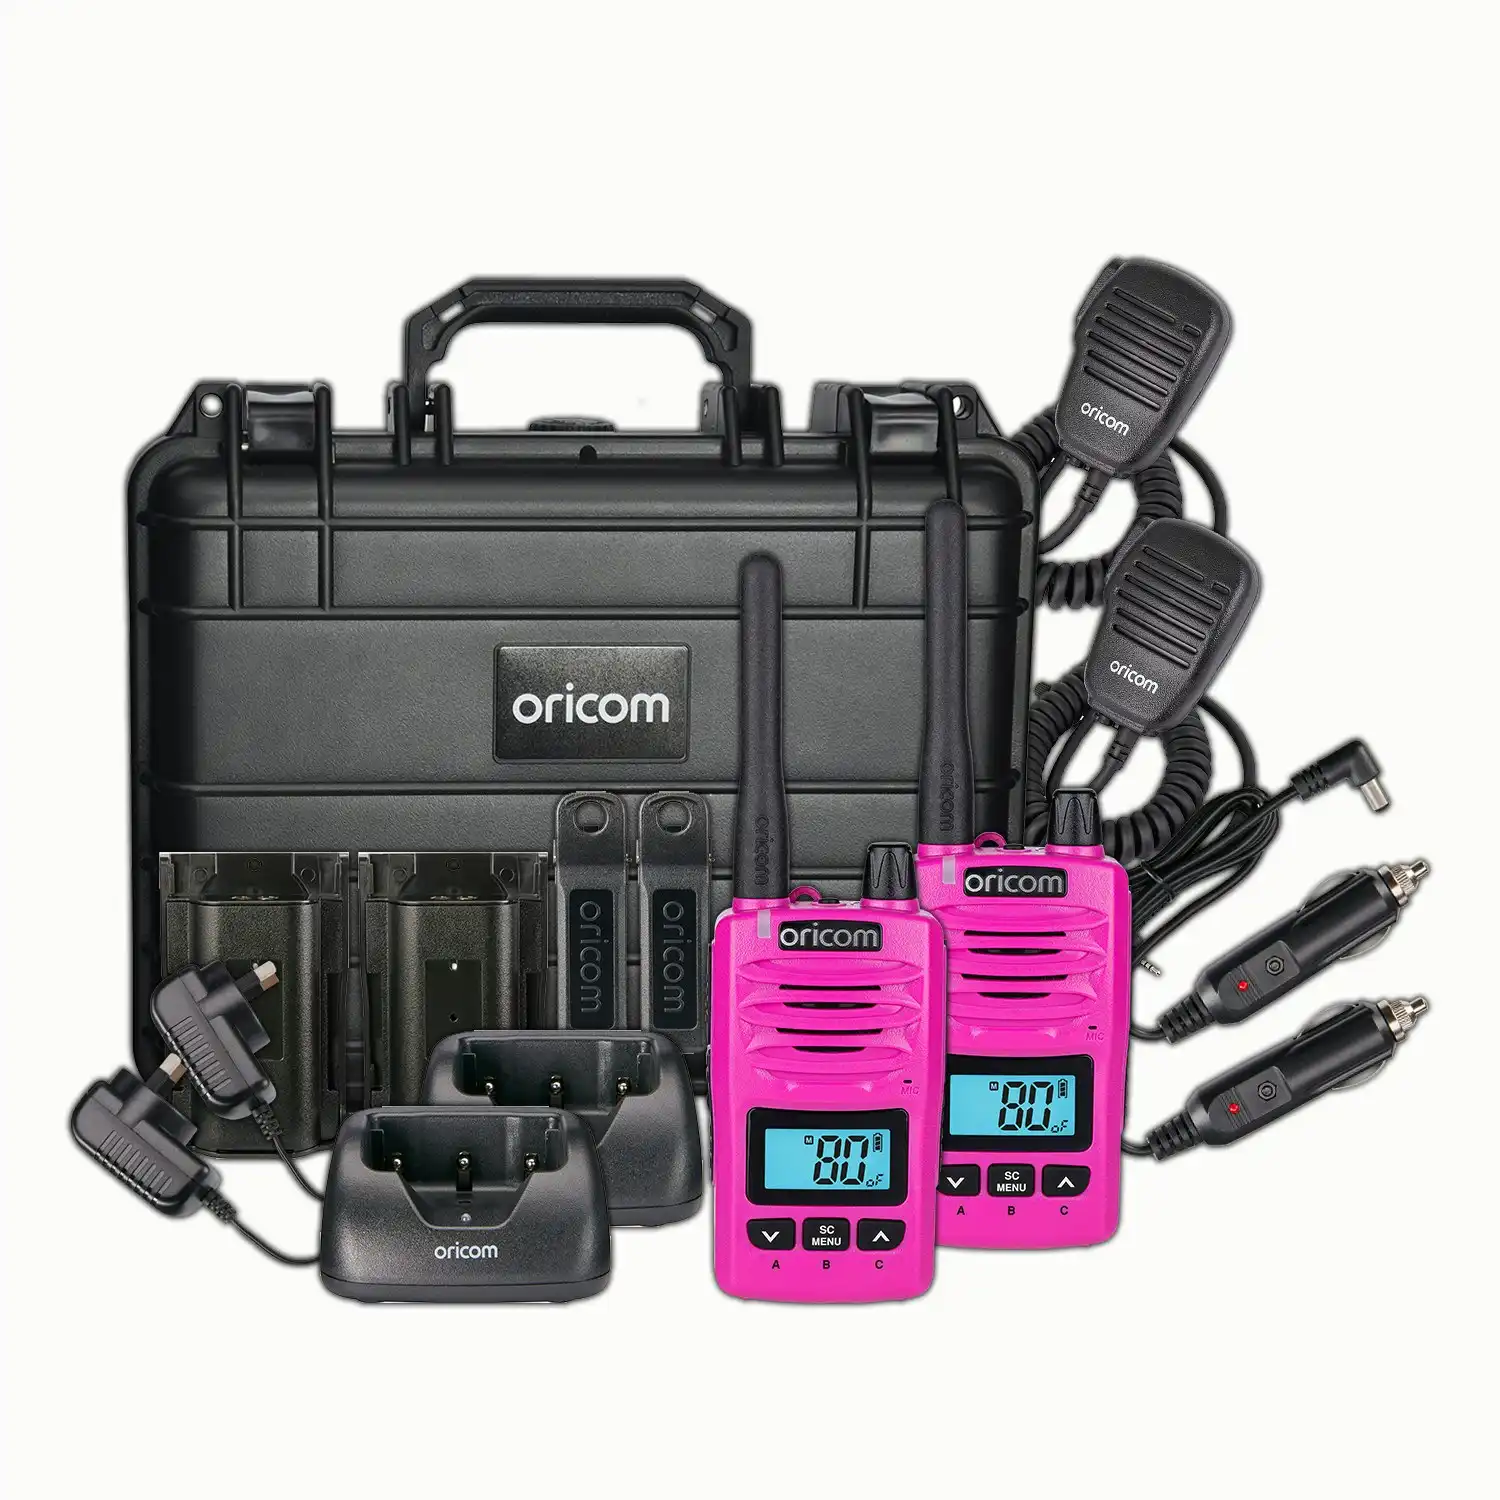 Oricom DTXTP600 5 Watt IP67 Waterproof Handheld UHF CB Radio Trade Pack - Pink